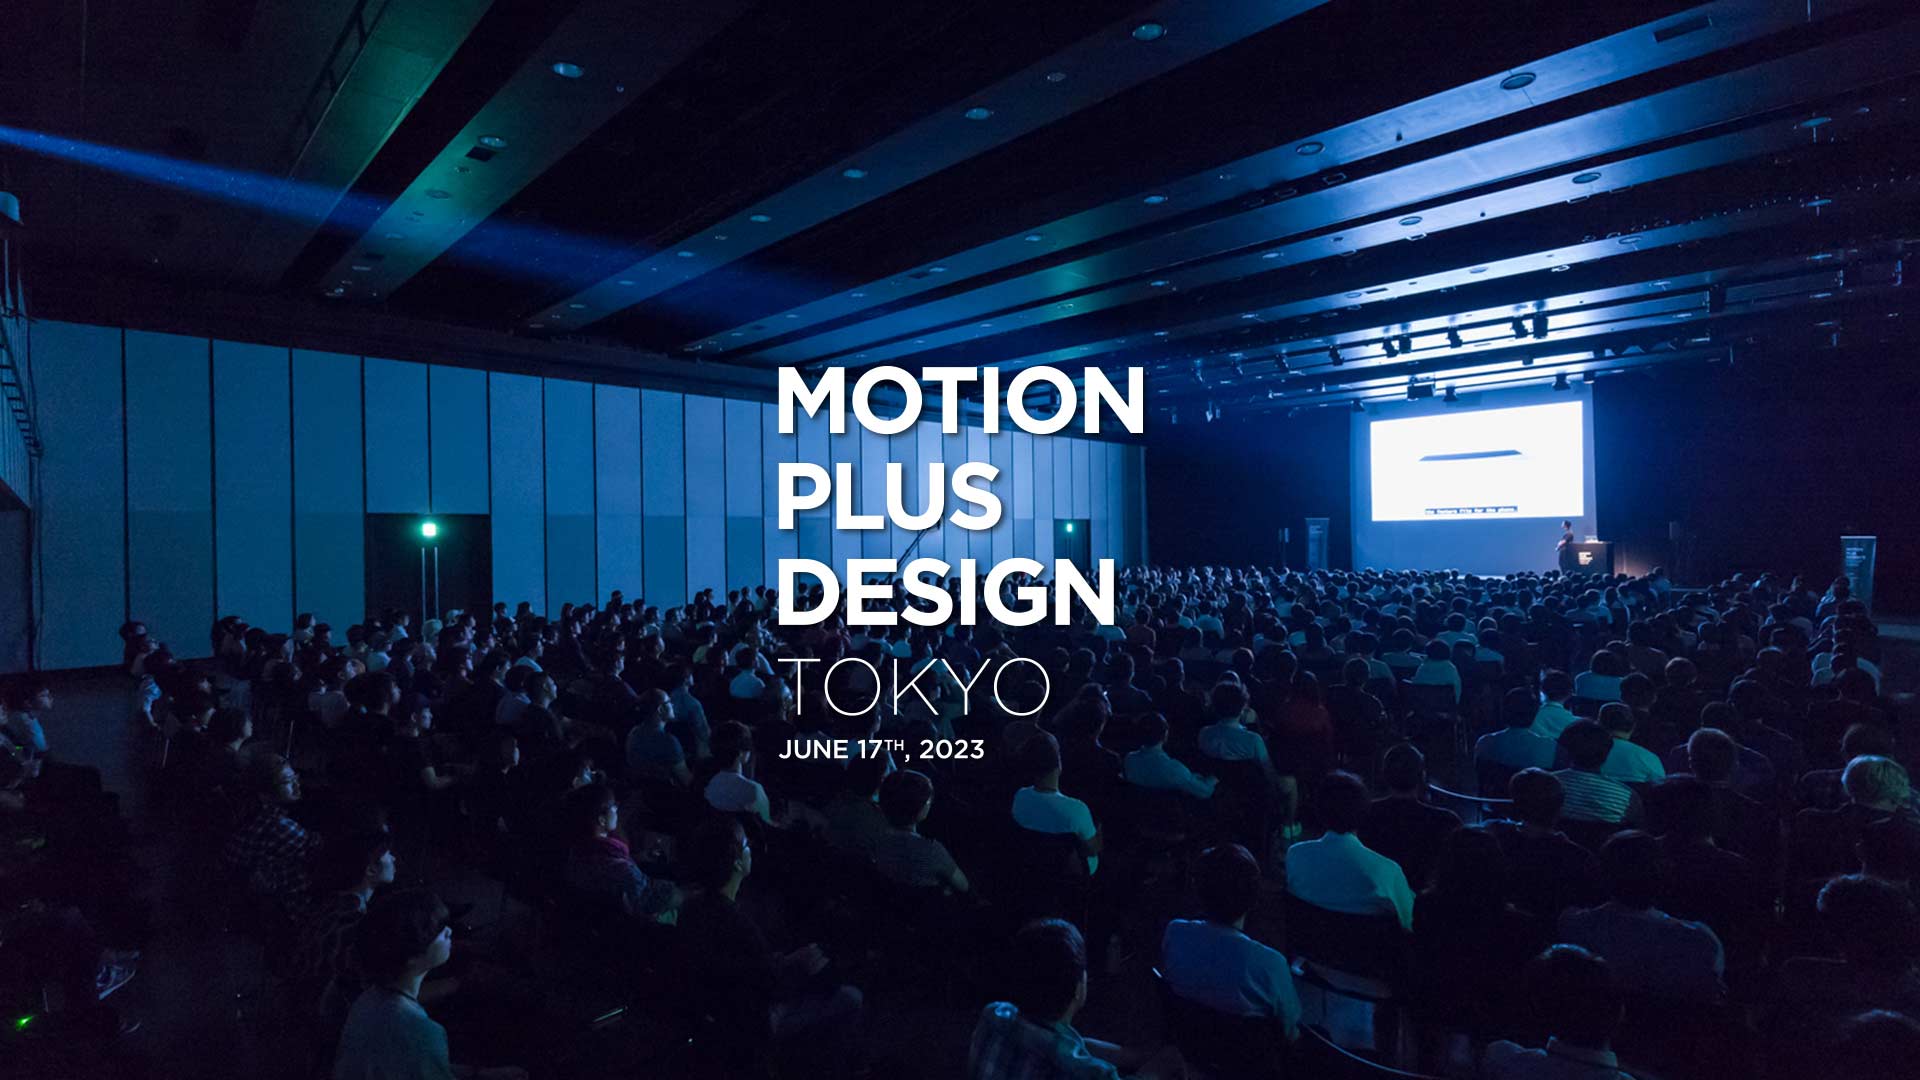 6月17日(土)、P.I.C.S.が協賛として参加する「Motion Plus Design Tokyo」に喜田夏記 (P.I.C.S. management)が登壇。